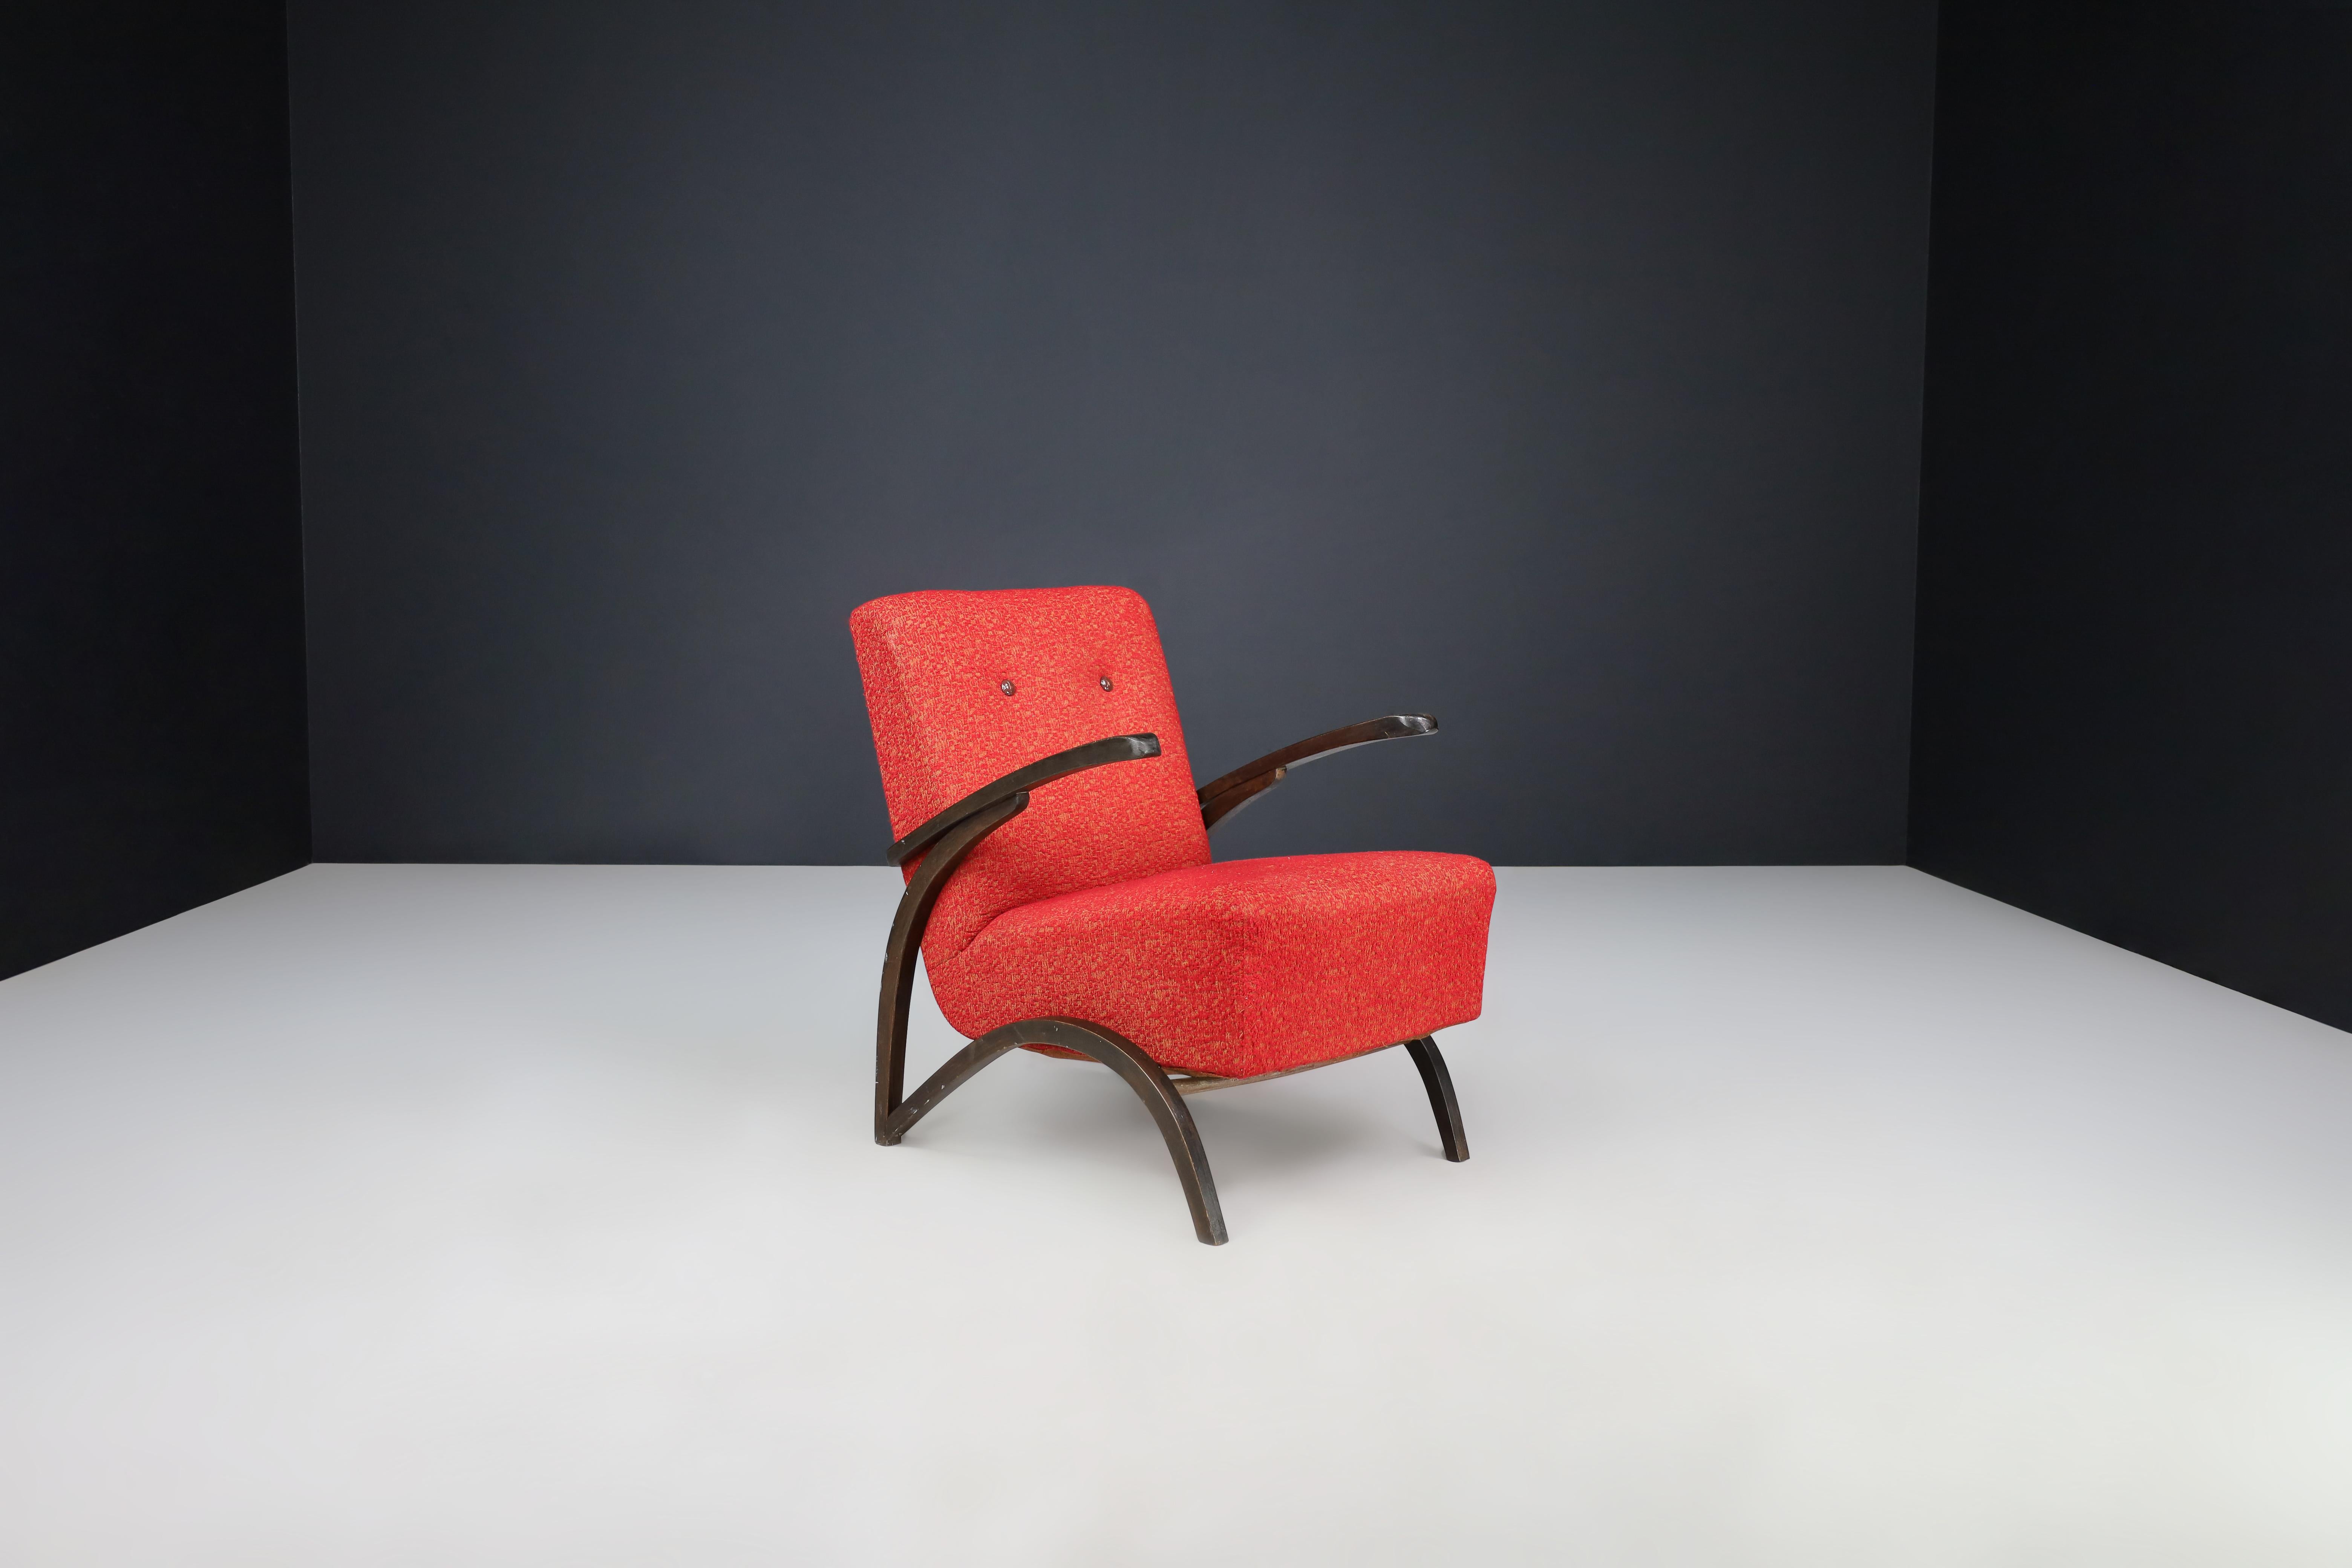 Chaise longue Jindrich Halabala en tapisserie rouge d'origine République tchèque 1930.

Cette élégante chaise longue, conçue par Jindrich Halabala et produite par Thonet en Tchécoslovaquie vers 1930, est une représentation exemplaire du design du